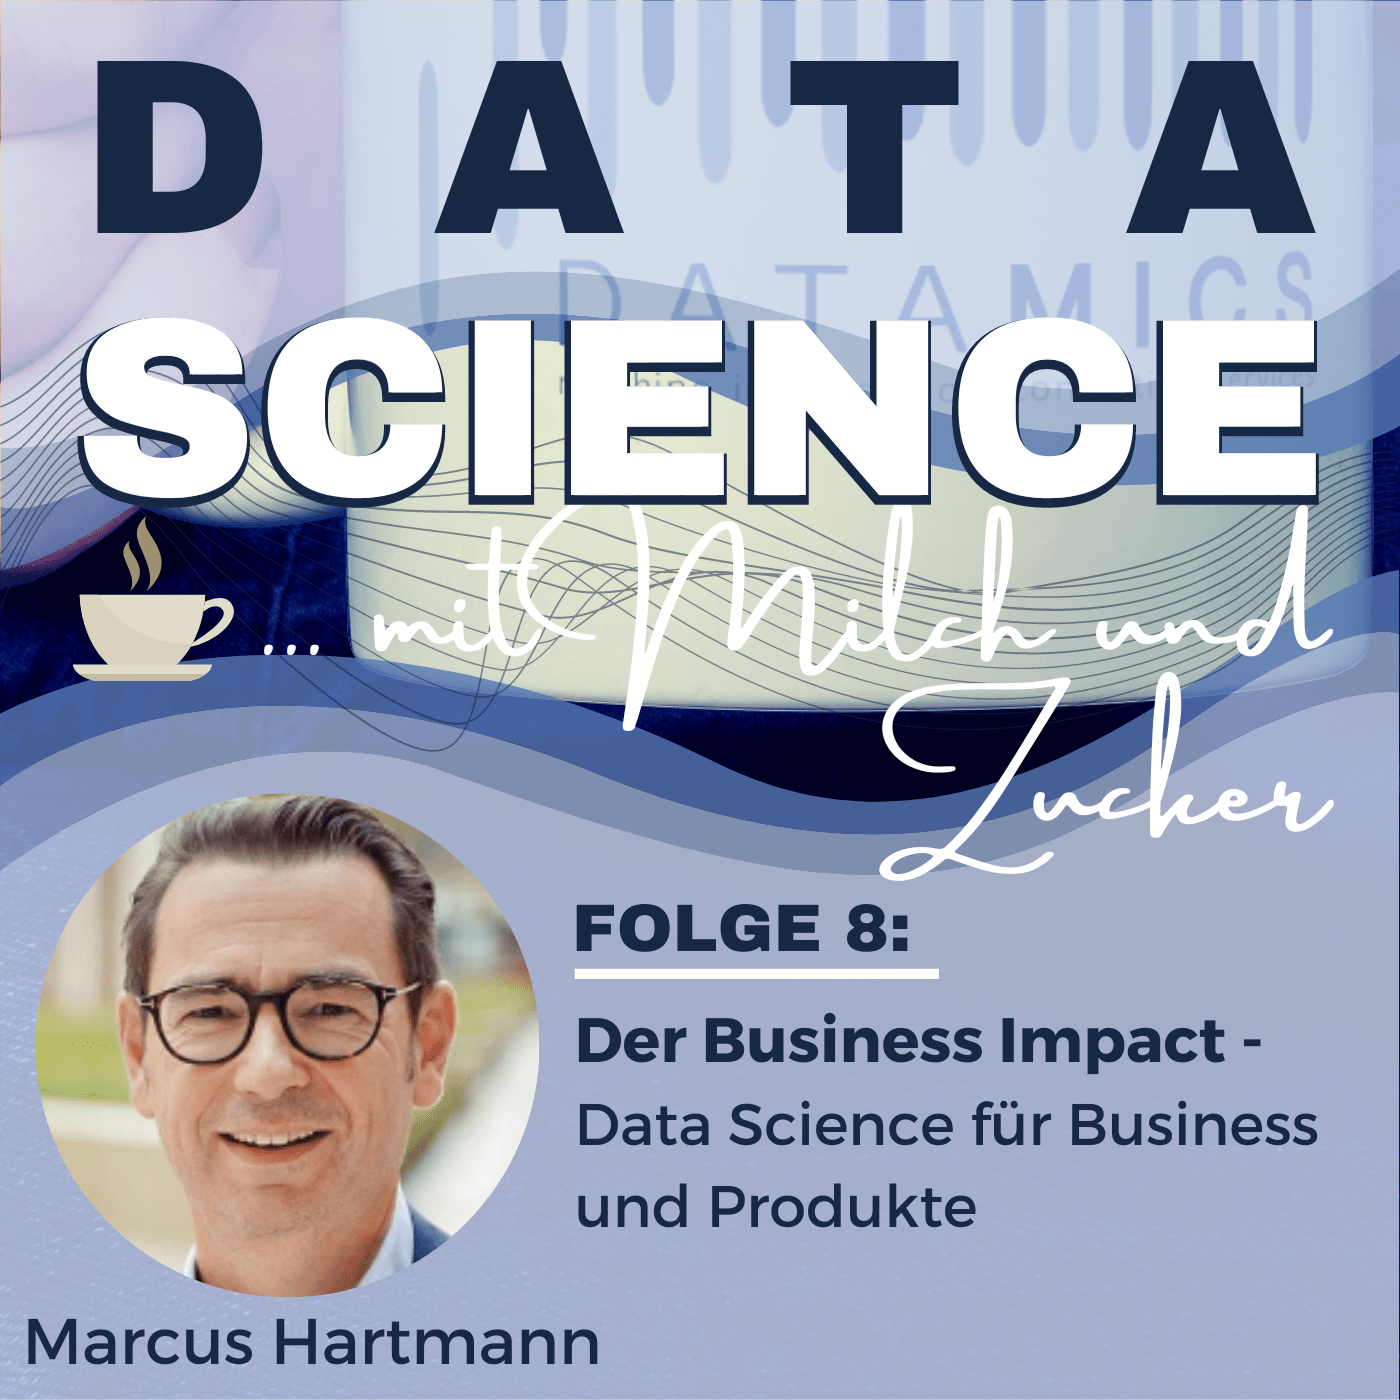 Der Business Impact von Data Science